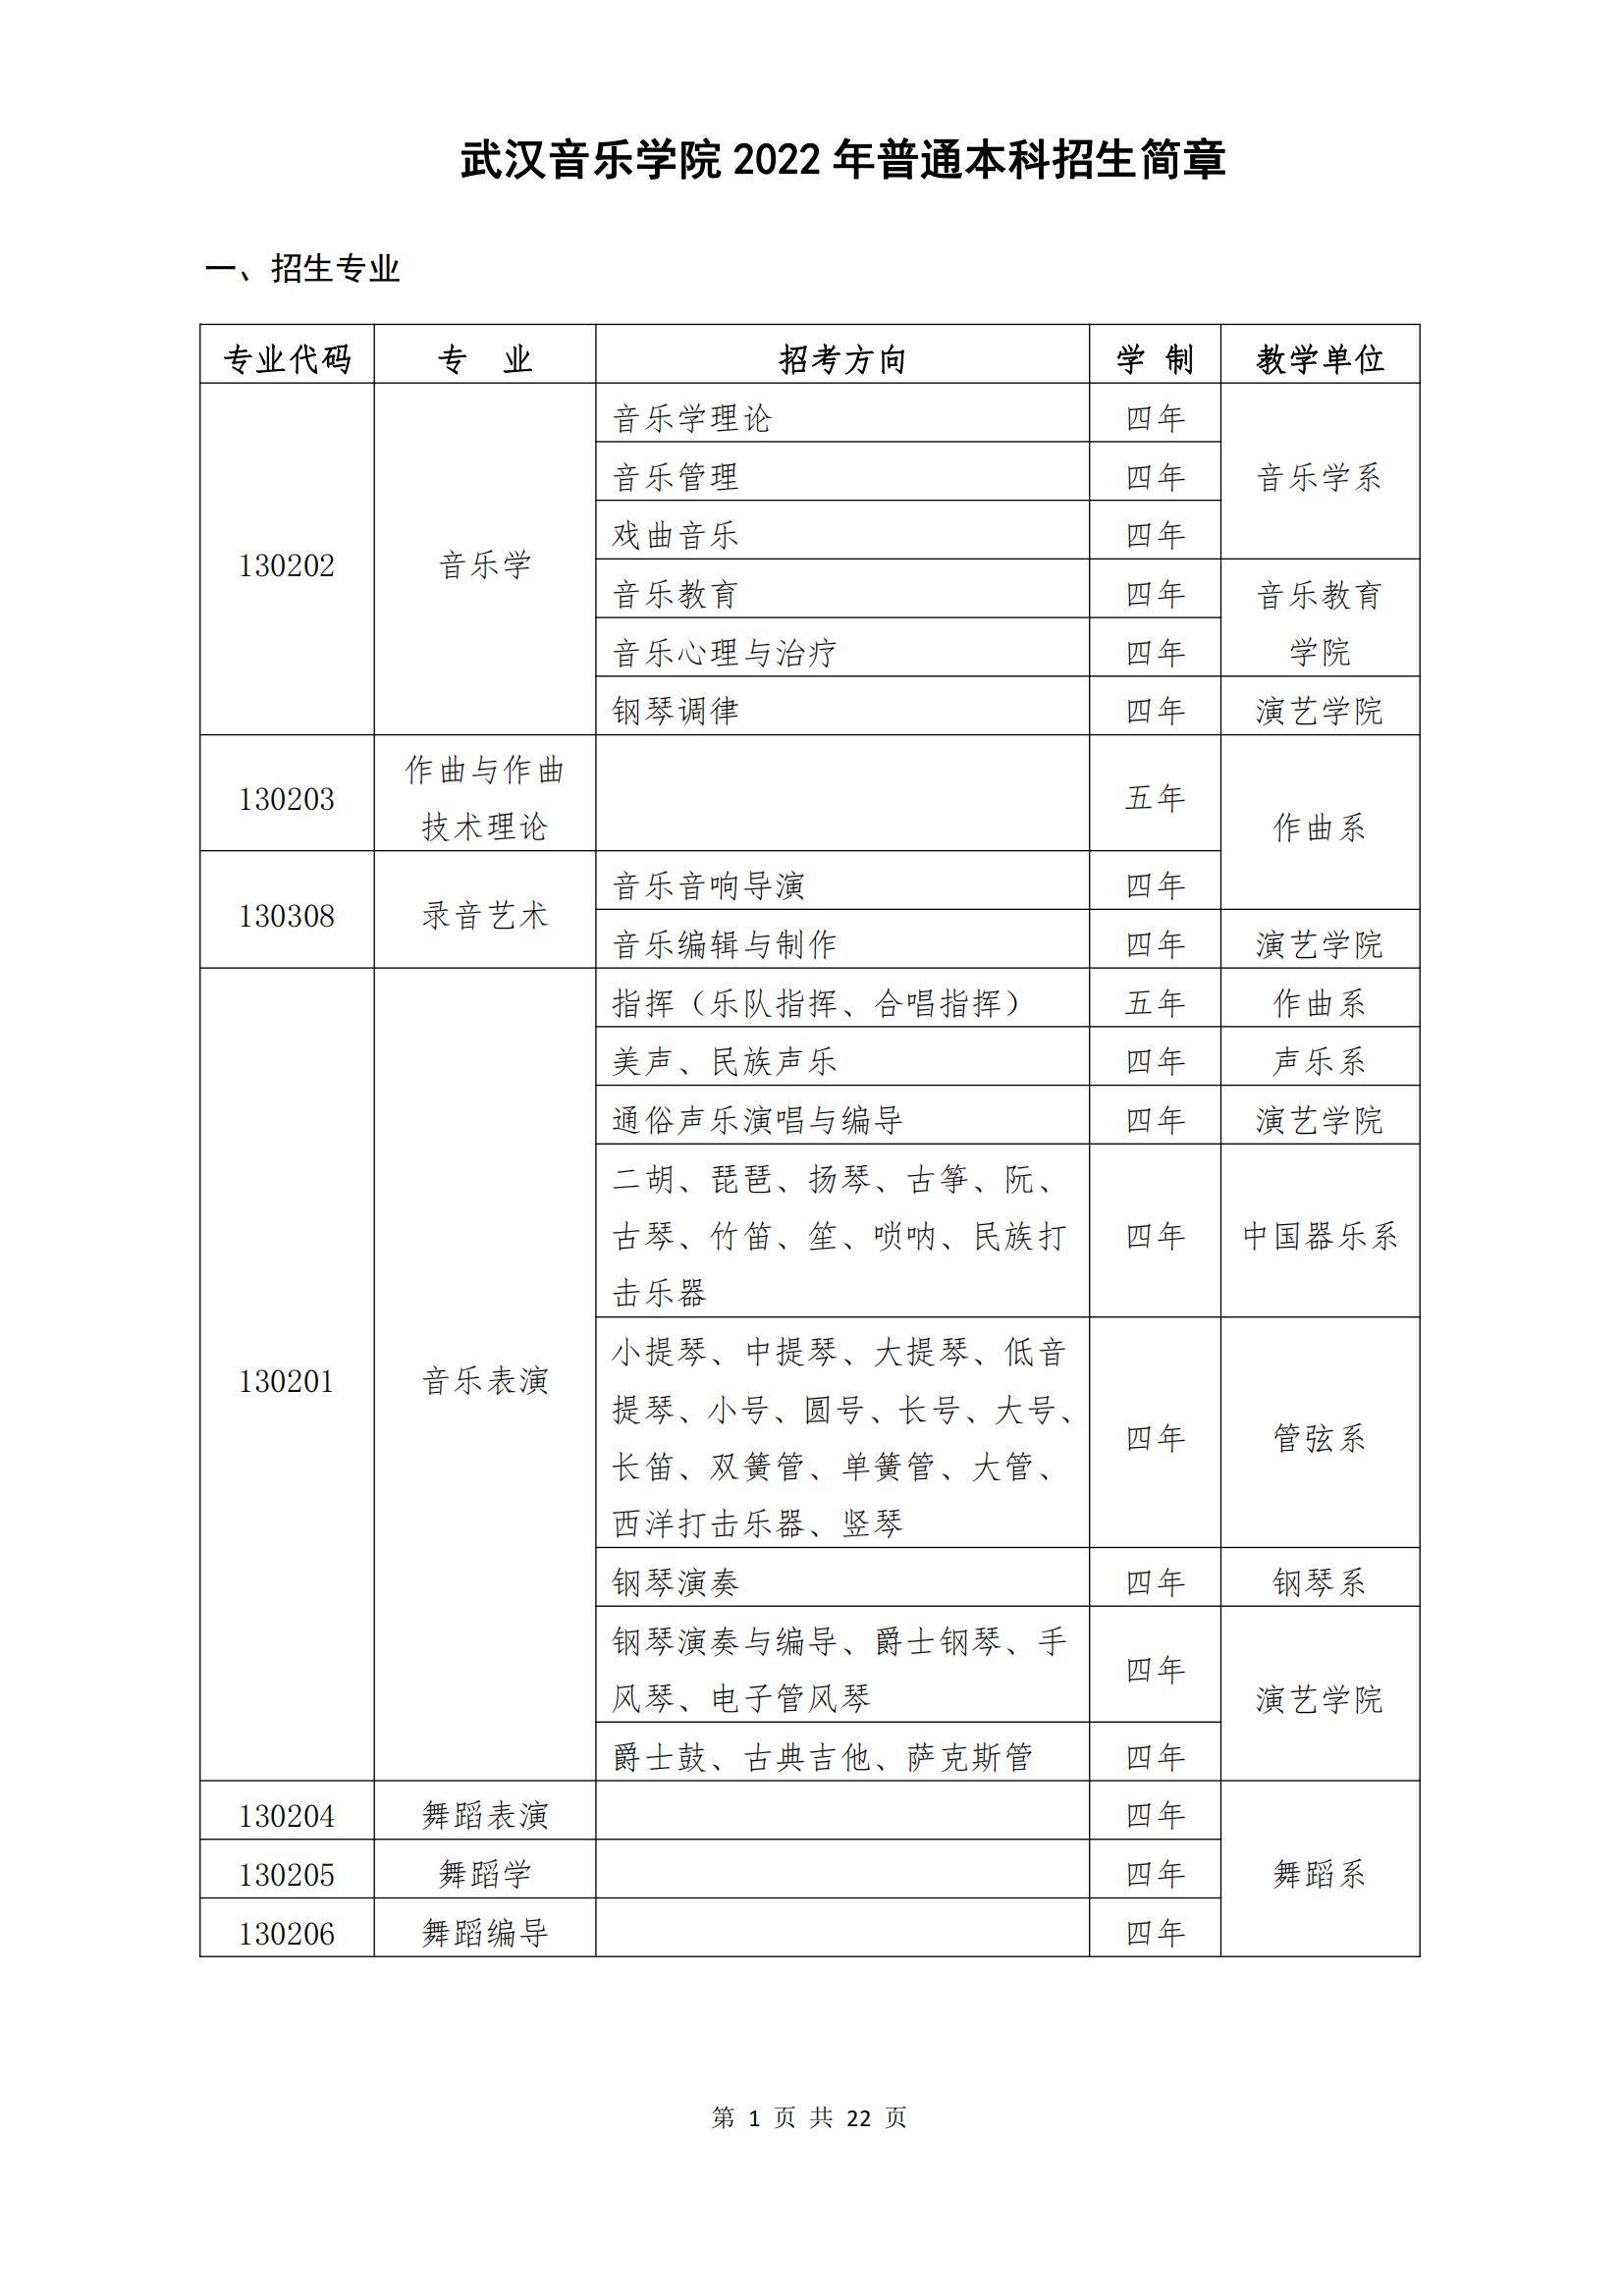 武汉音乐学院2022年普通本科招生简章_00.jpg